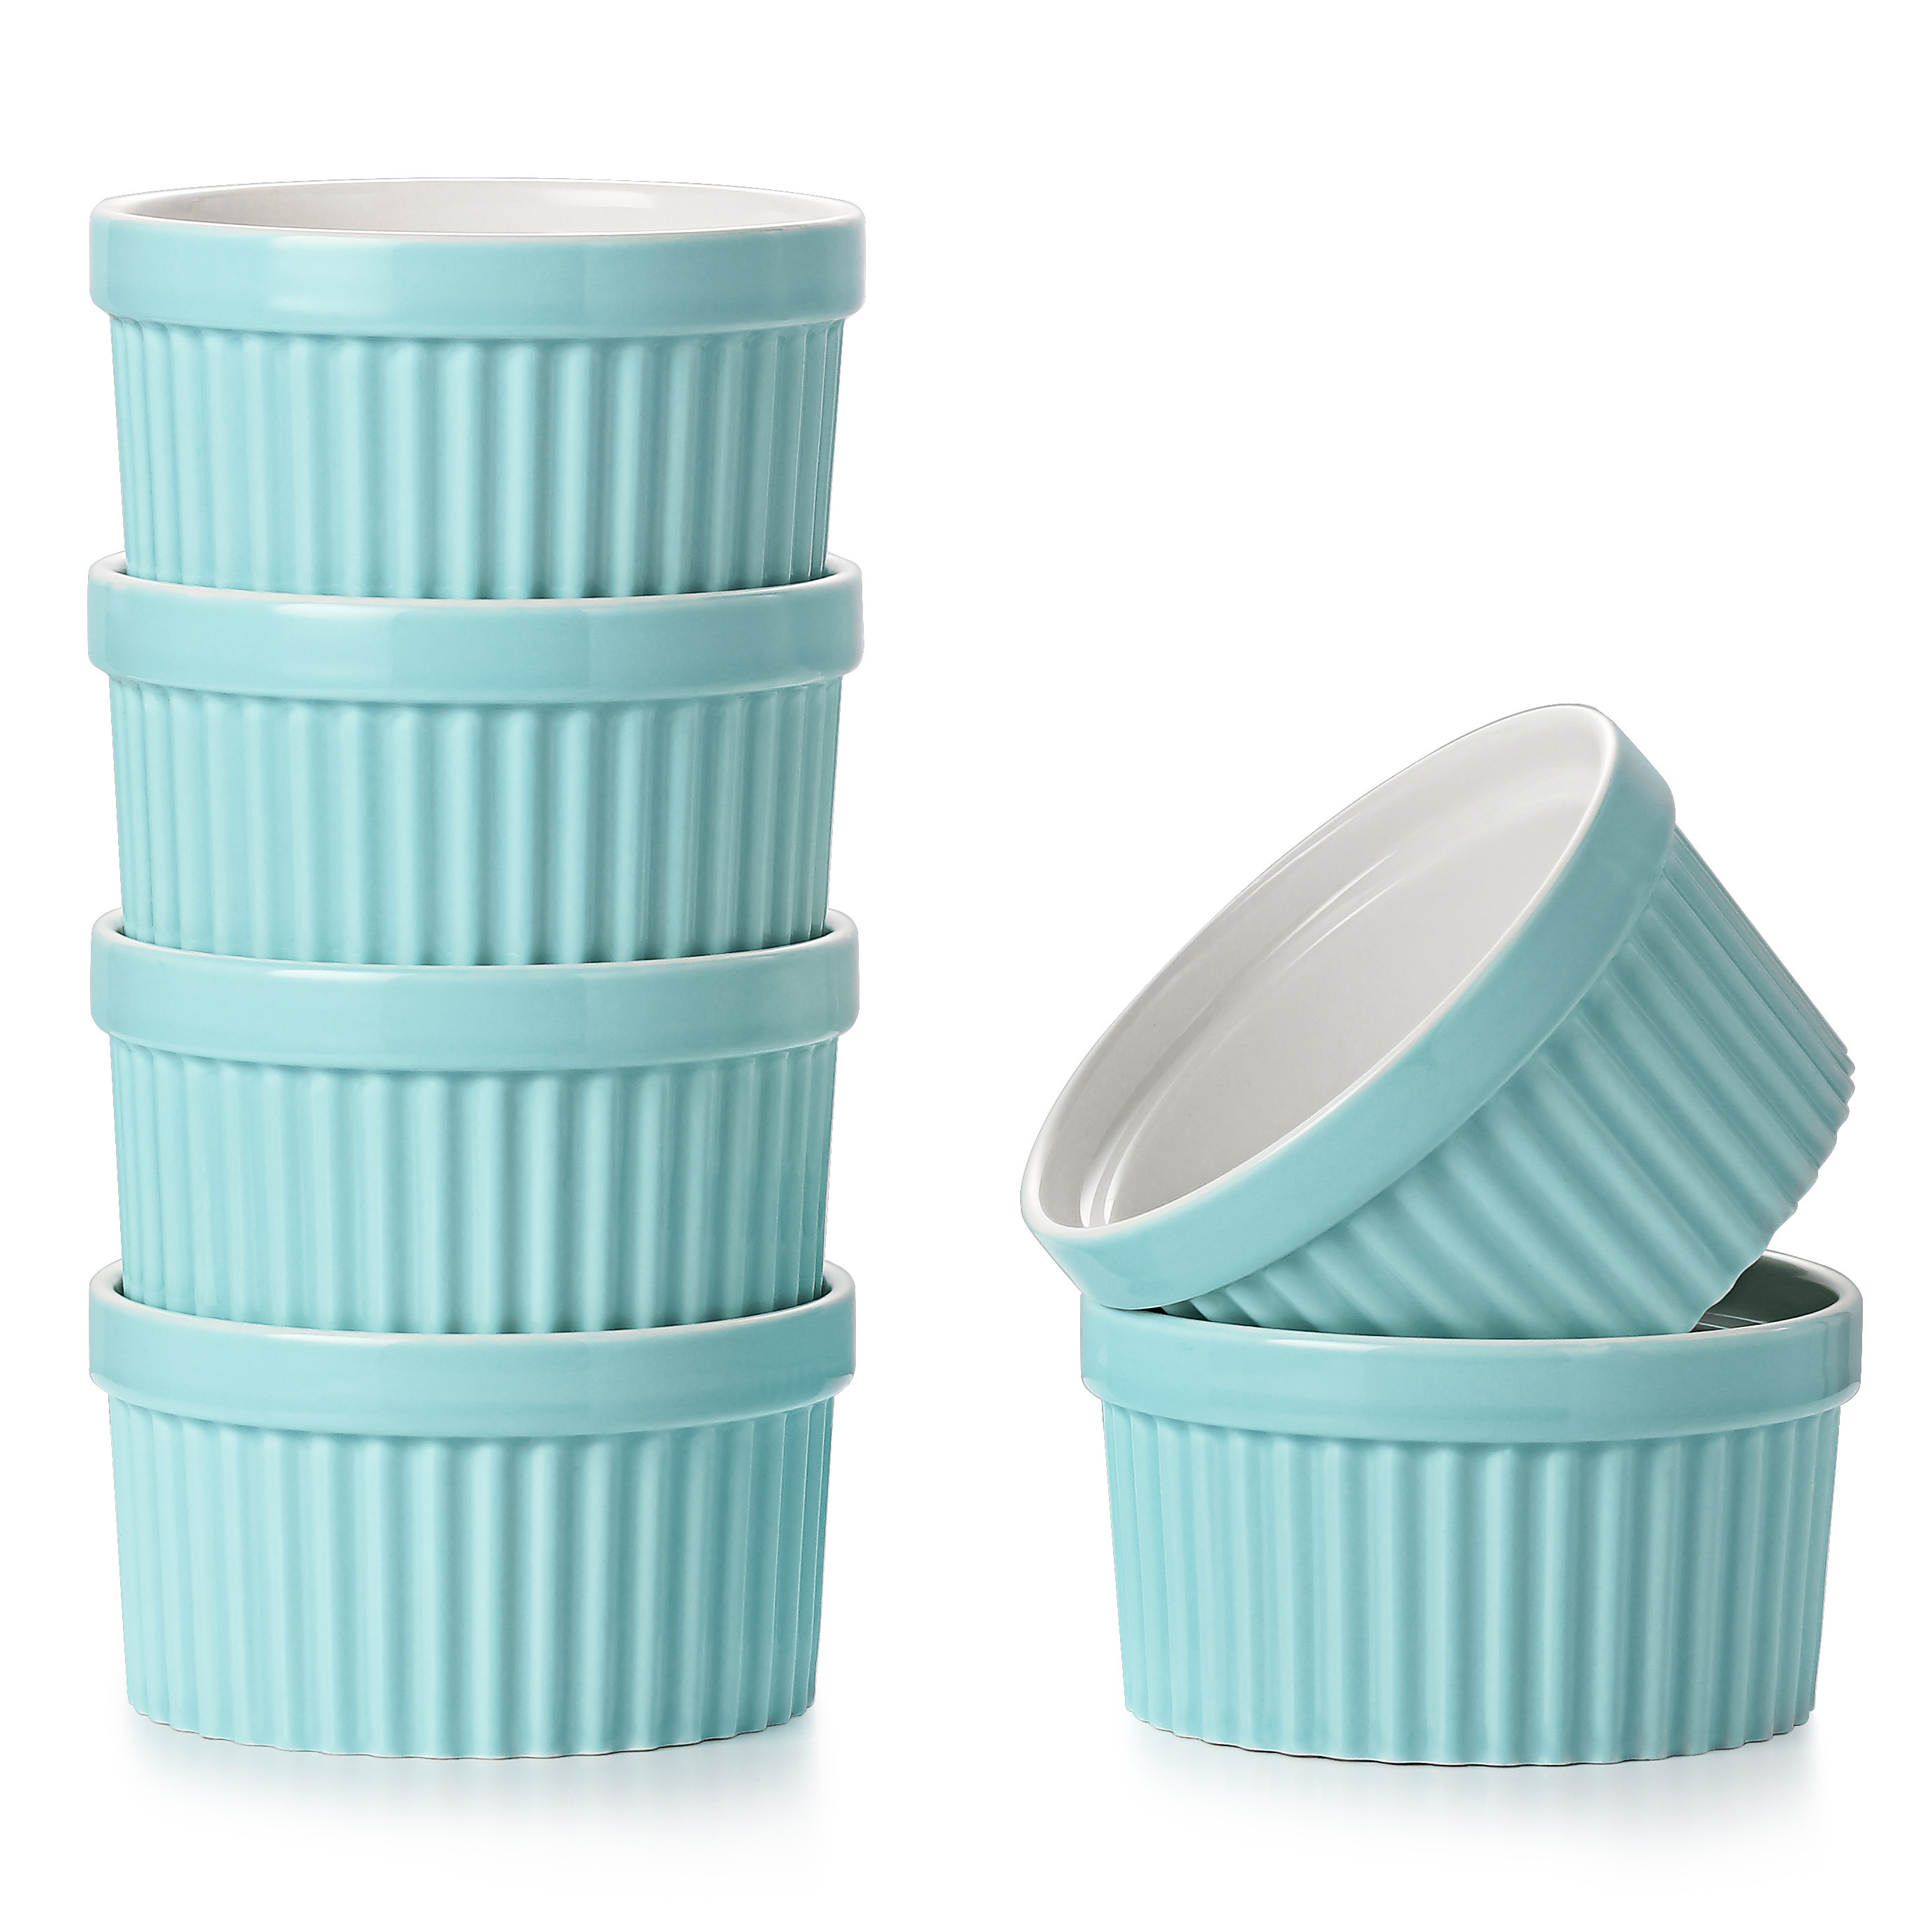 https://assets.wfcdn.com/im/30049363/compr-r85/2308/230811512/6-oz-ceramic-blue-ramekins-for-creme-brulee-souffle-set-of-6.jpg